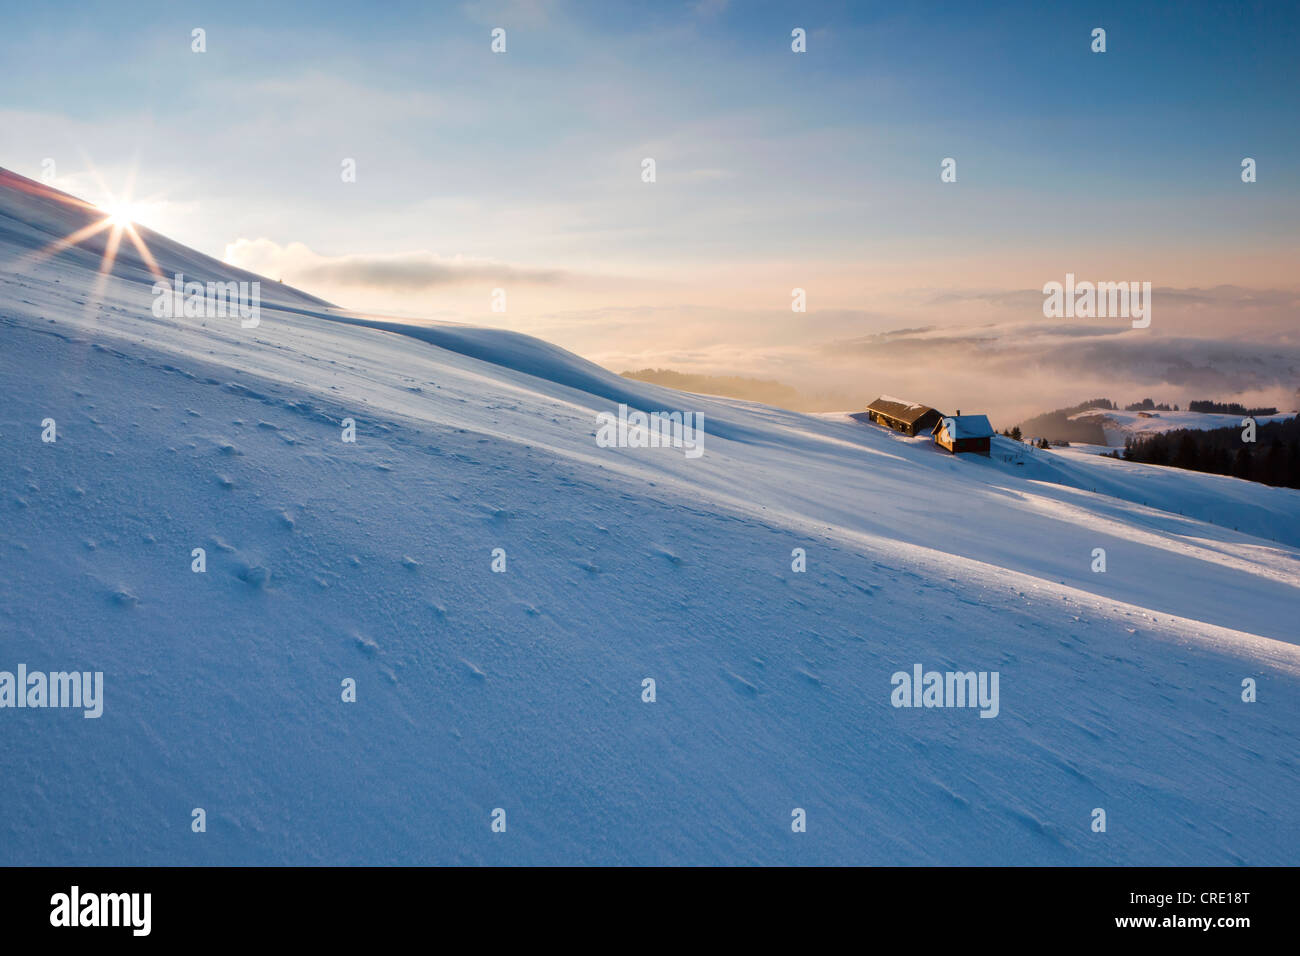 Atmosfera serale sulla Hochalp invernale di montagna, pascolo alpino, alpi svizzere, Alpstein massiccio e montagna Saentis, Svizzera, Europa Foto Stock